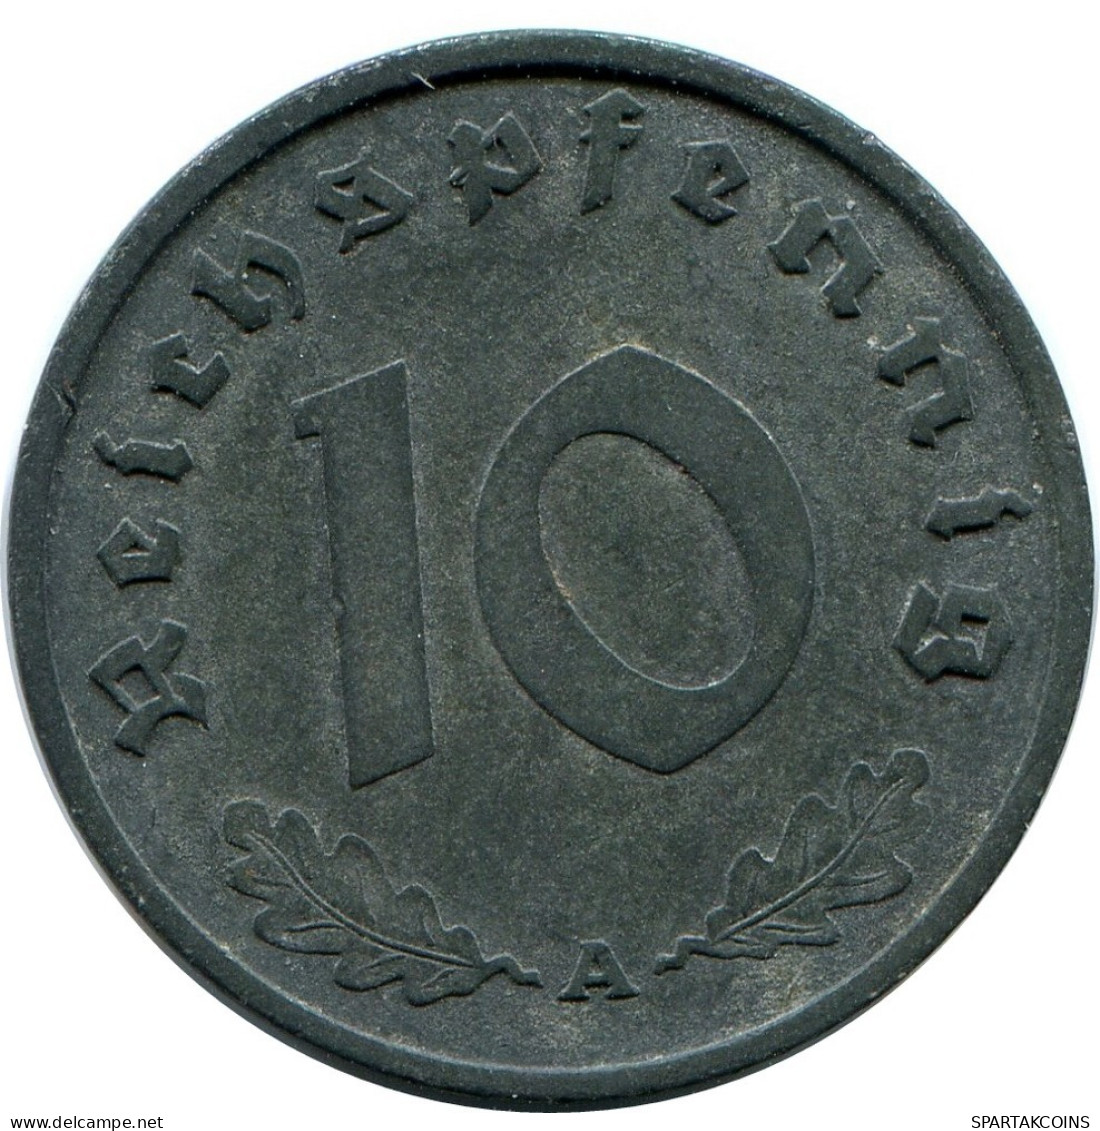 10 REICHSPFENNIG 1941 A GERMANY Coin #DB954.U.A - 10 Reichspfennig